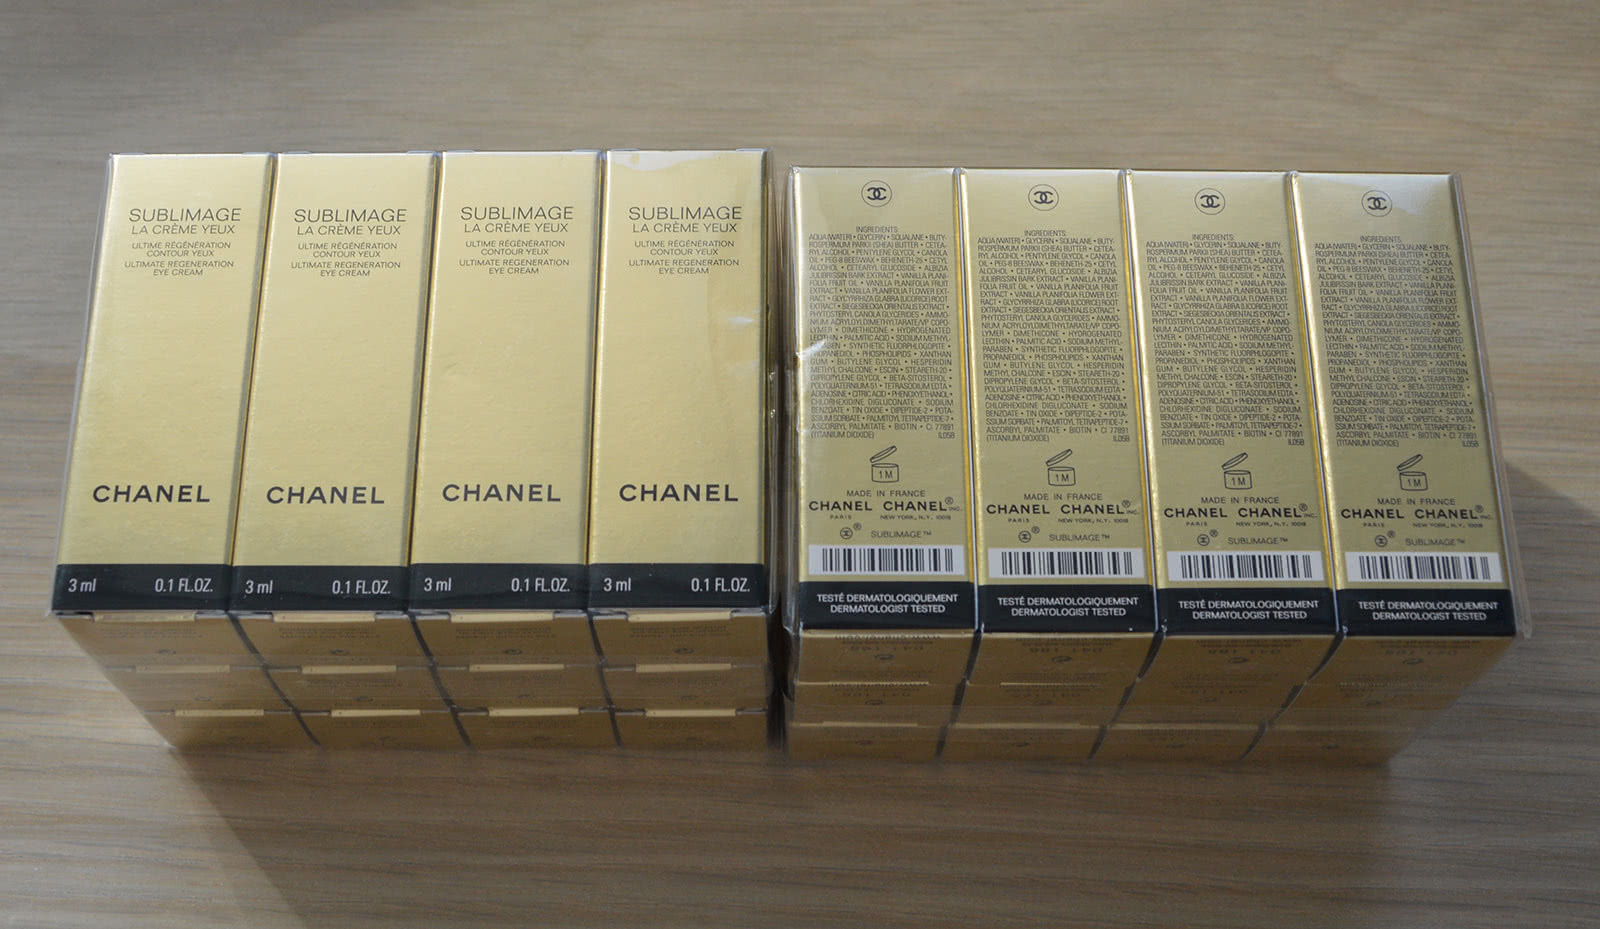 Крем вокруг глаз Chanel Sublimage La Creme Yeux упаковка пробиков по 3 мл, всего 36 мл